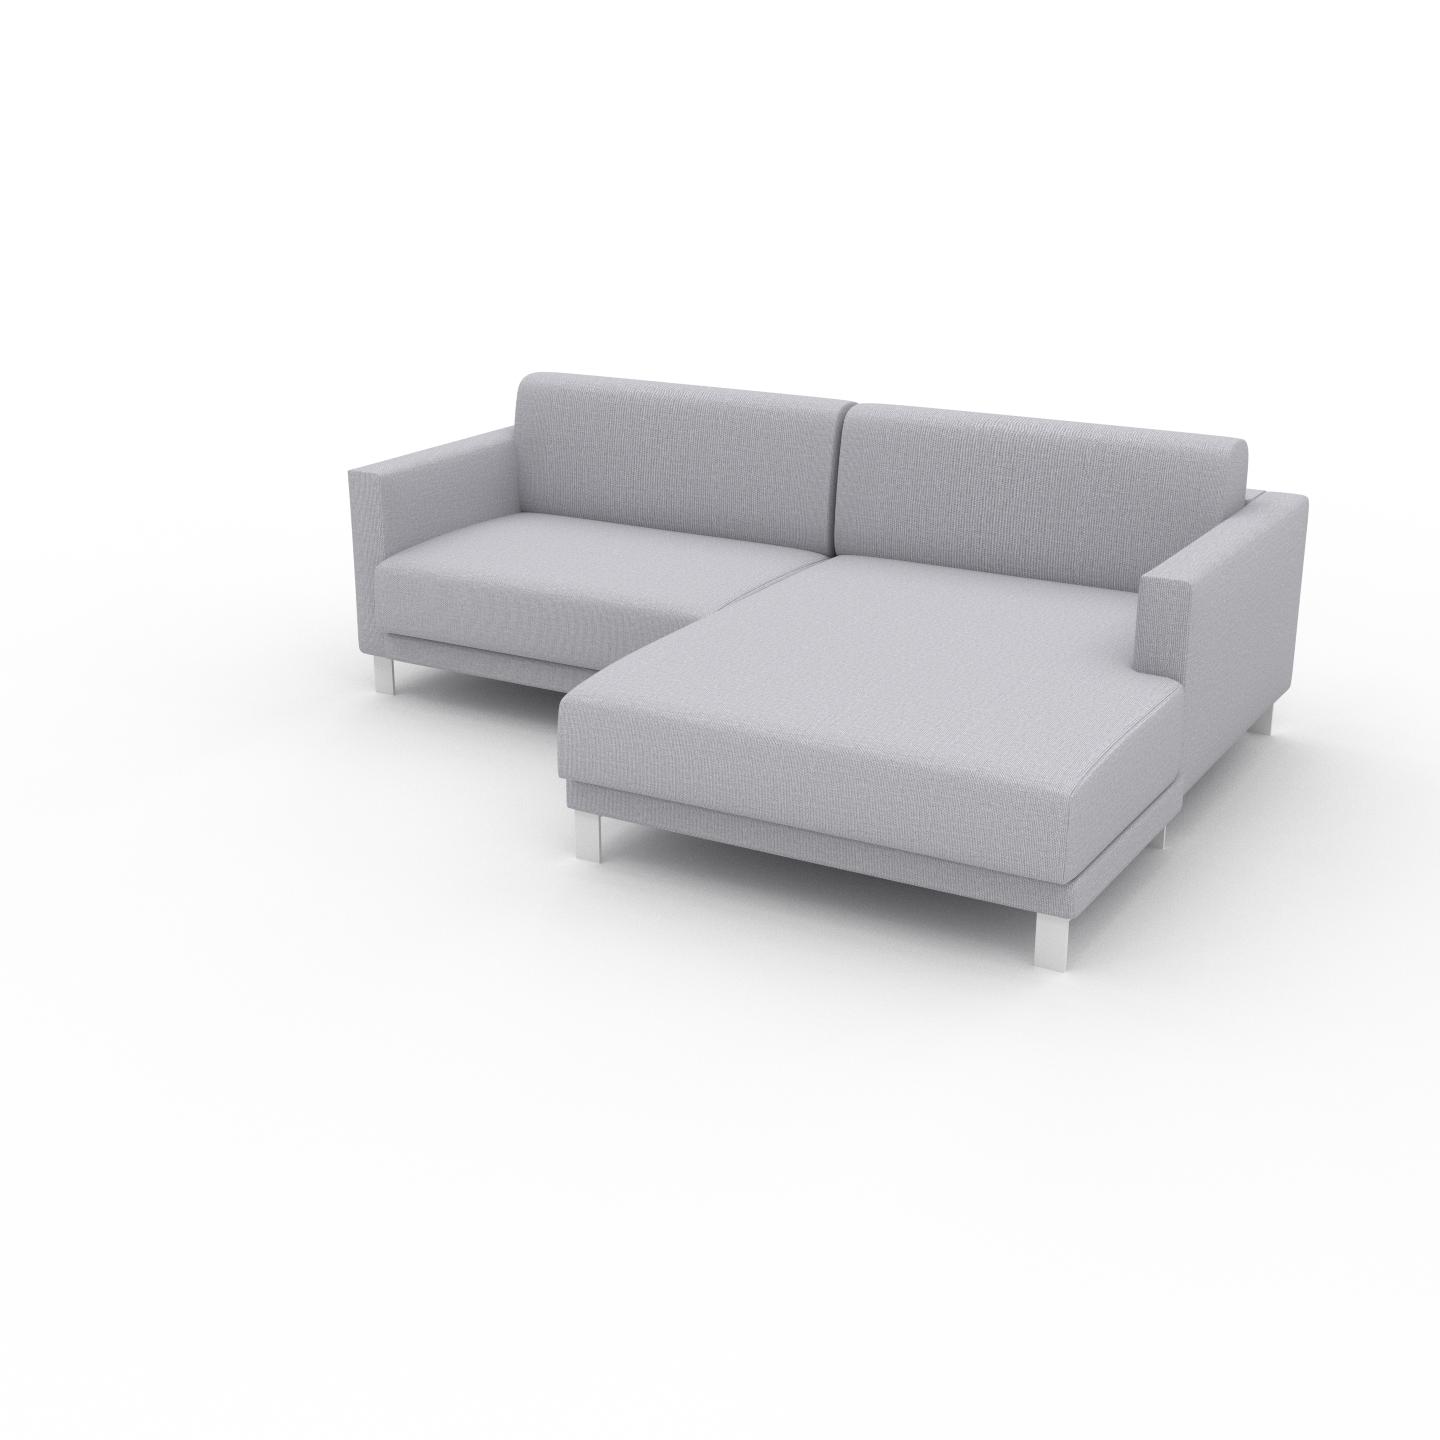 MYCS Sofa Lichtgrau - Moderne Designer-Couch: Hochwertige Qualität, einzigartiges Design - 224 x 75 x 162 cm, Komplett anpassbar